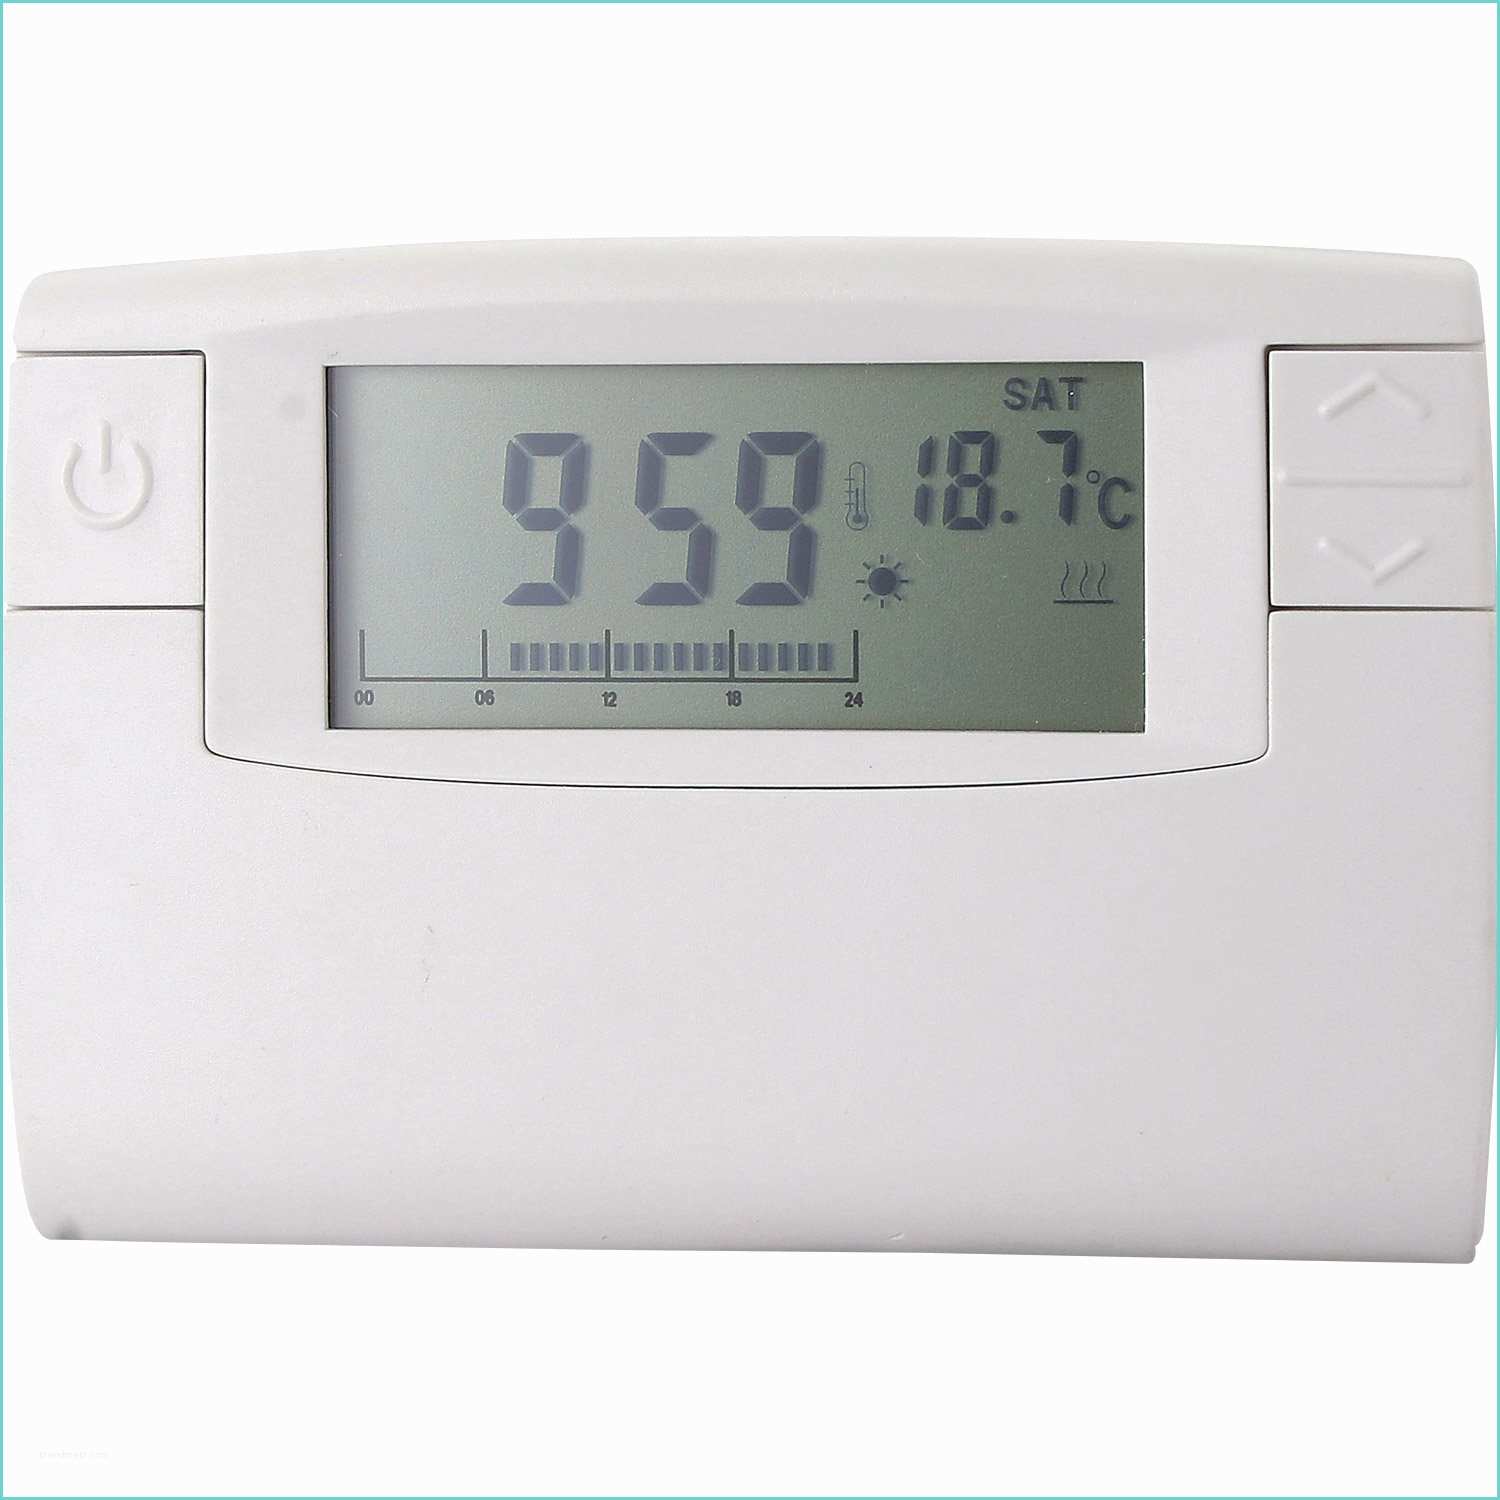 Thermostat Delta Dore Leroy Merlin Schéma Régulation Plancher Chauffant thermostat Mecanique